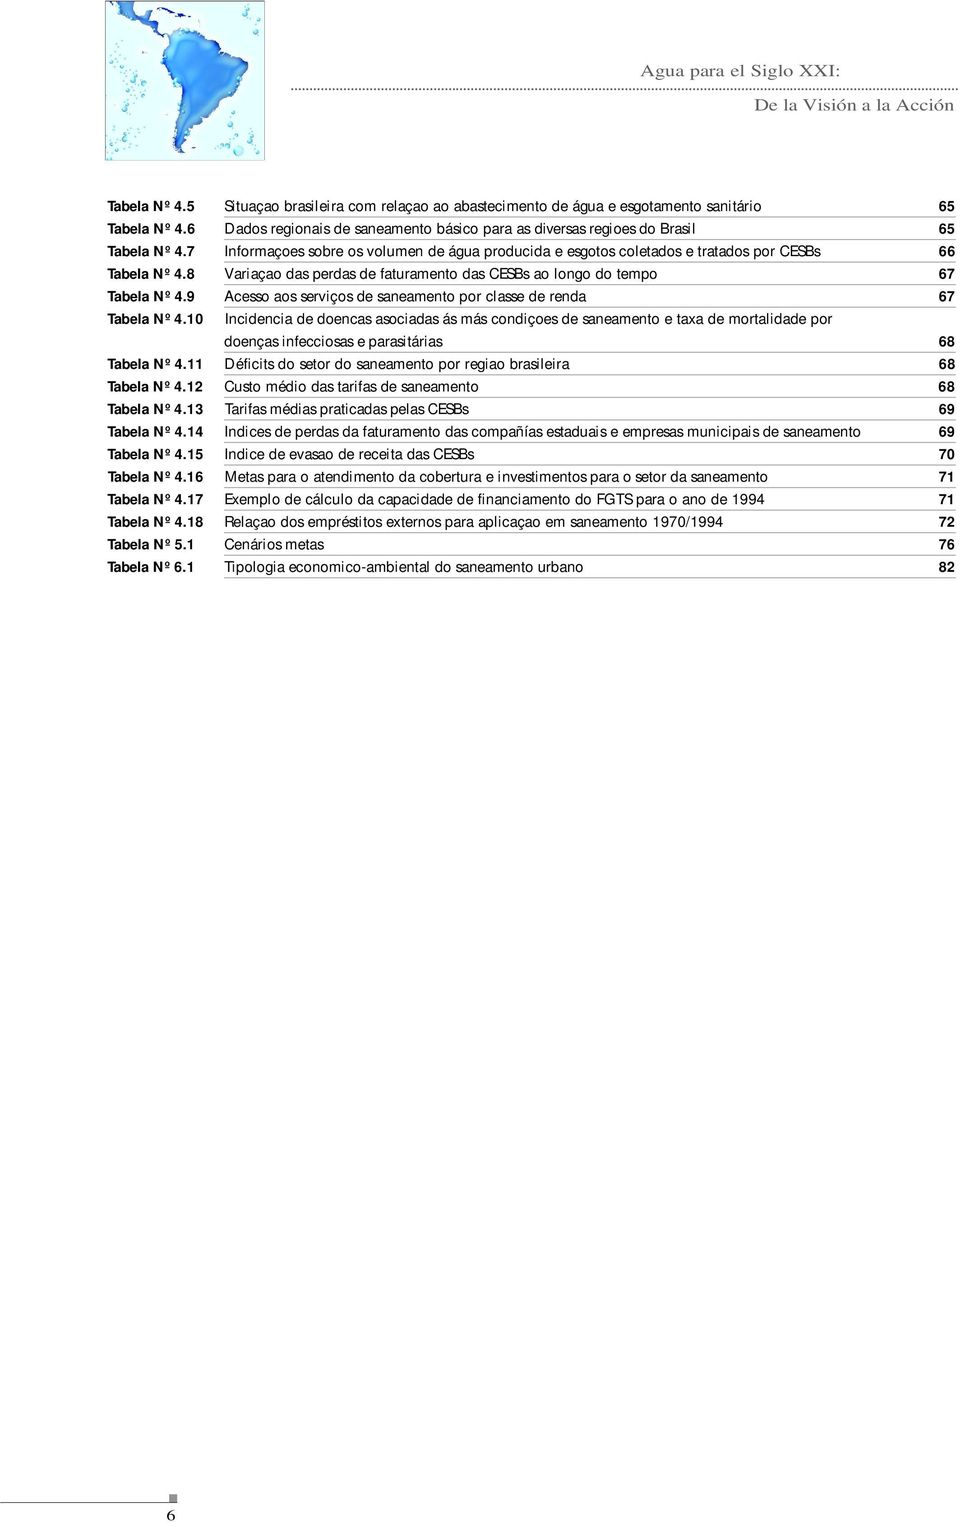 8 Variaçao das perdas de faturamento das CESBs ao longo do tempo 67 Tabela Nº 4.9 Acesso aos serviços de saneamento por classe de renda 67 Tabela Nº 4.